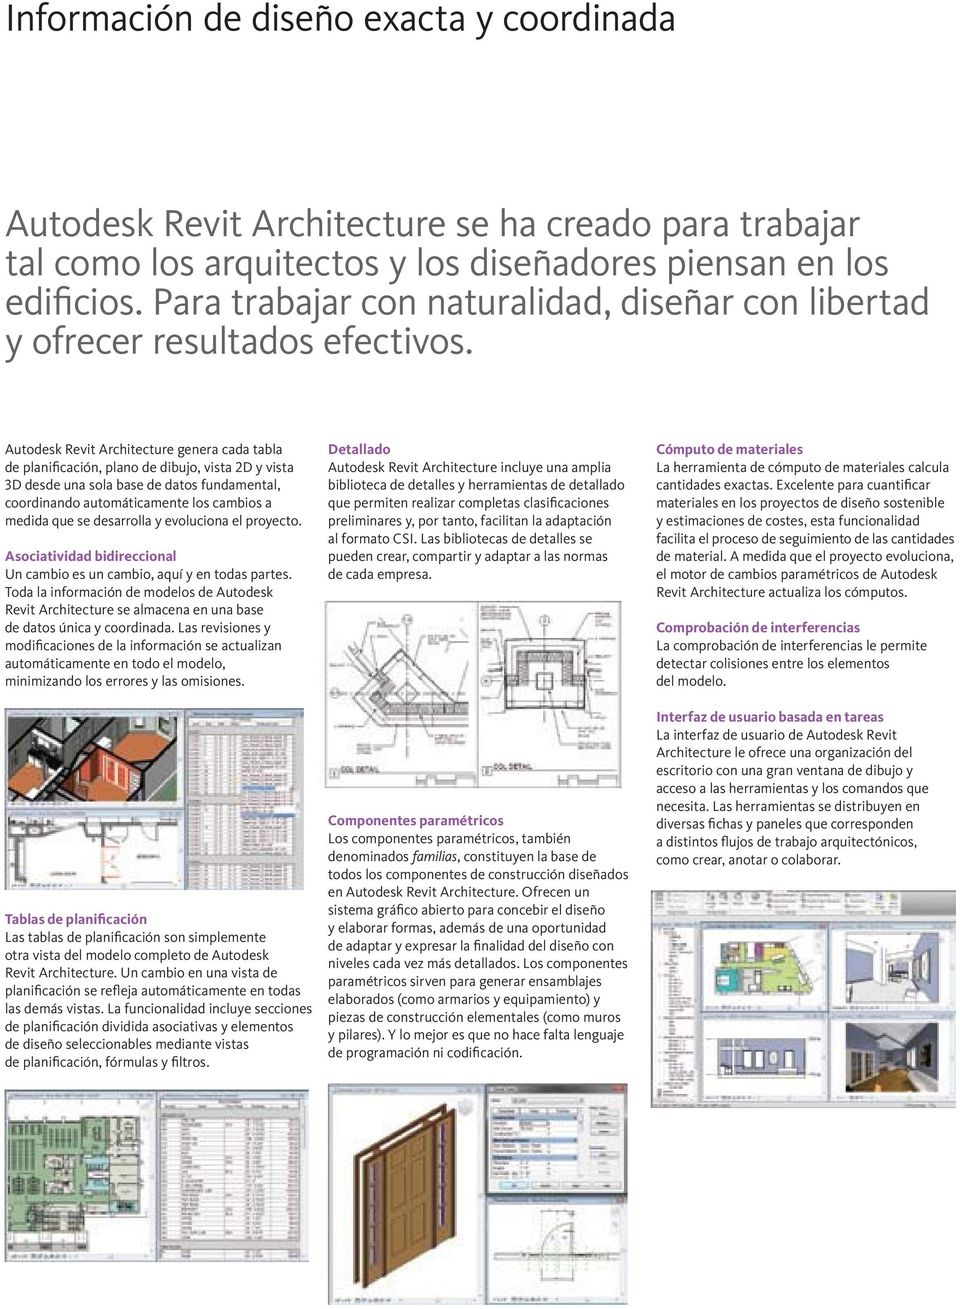 Autodesk Revit Architecture genera cada tabla de planificación, plano de dibujo, vista 2D y vista 3D desde una sola base de datos fundamental, coordinando automáticamente los cambios a medida que se